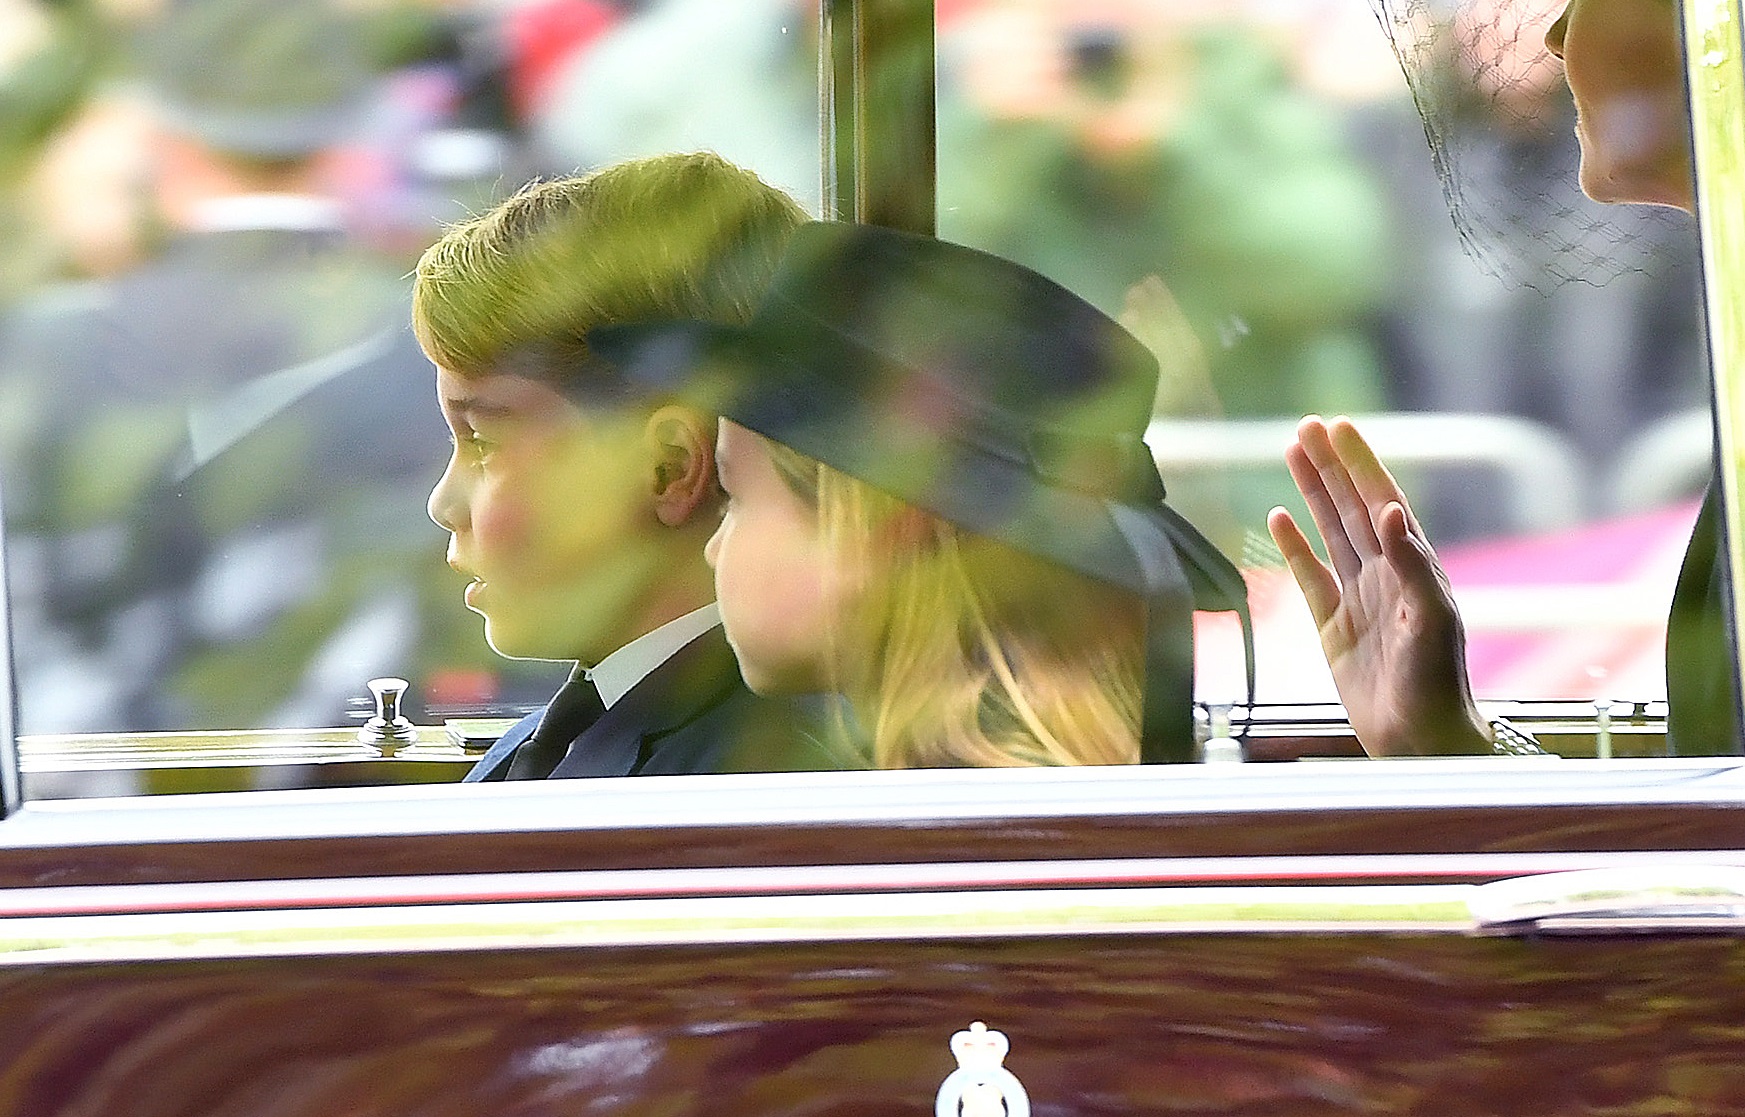 Κηδεία βασίλισσας Ελισάβετ: Ο λόγος που ο πρίγκιπας Τζορτζ και η πριγκίπισσα Σάρλοτ έγιναν πρώτο θέμα συζήτησης